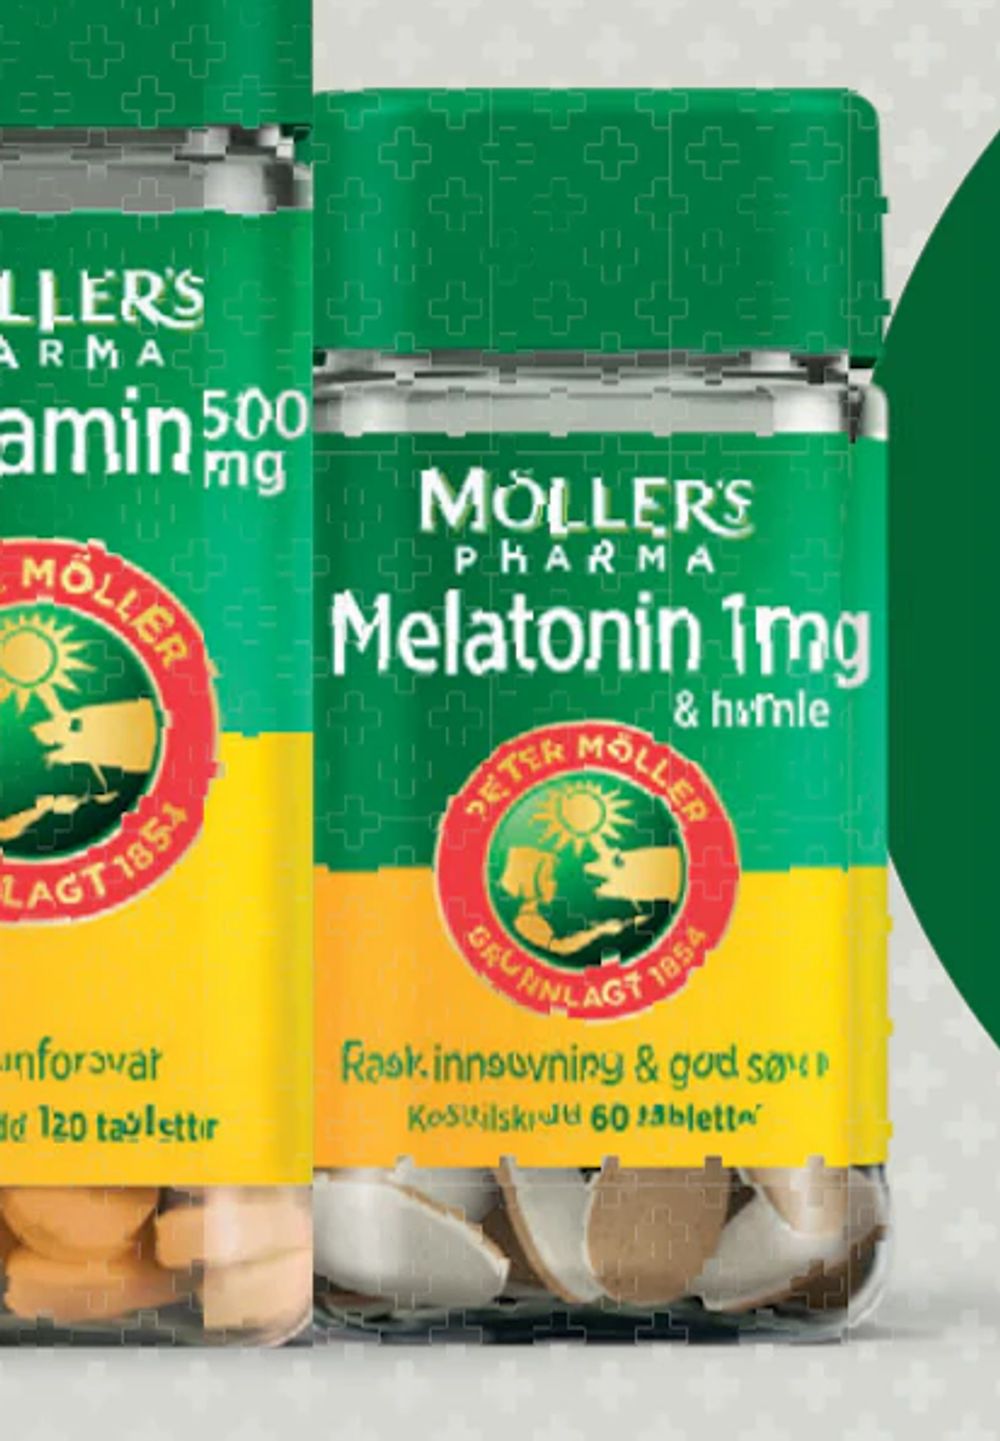 Tilbud på Möller's Pharma Melatonin tab 1 mg & humle fra Vitusapotek til 74,50 kr